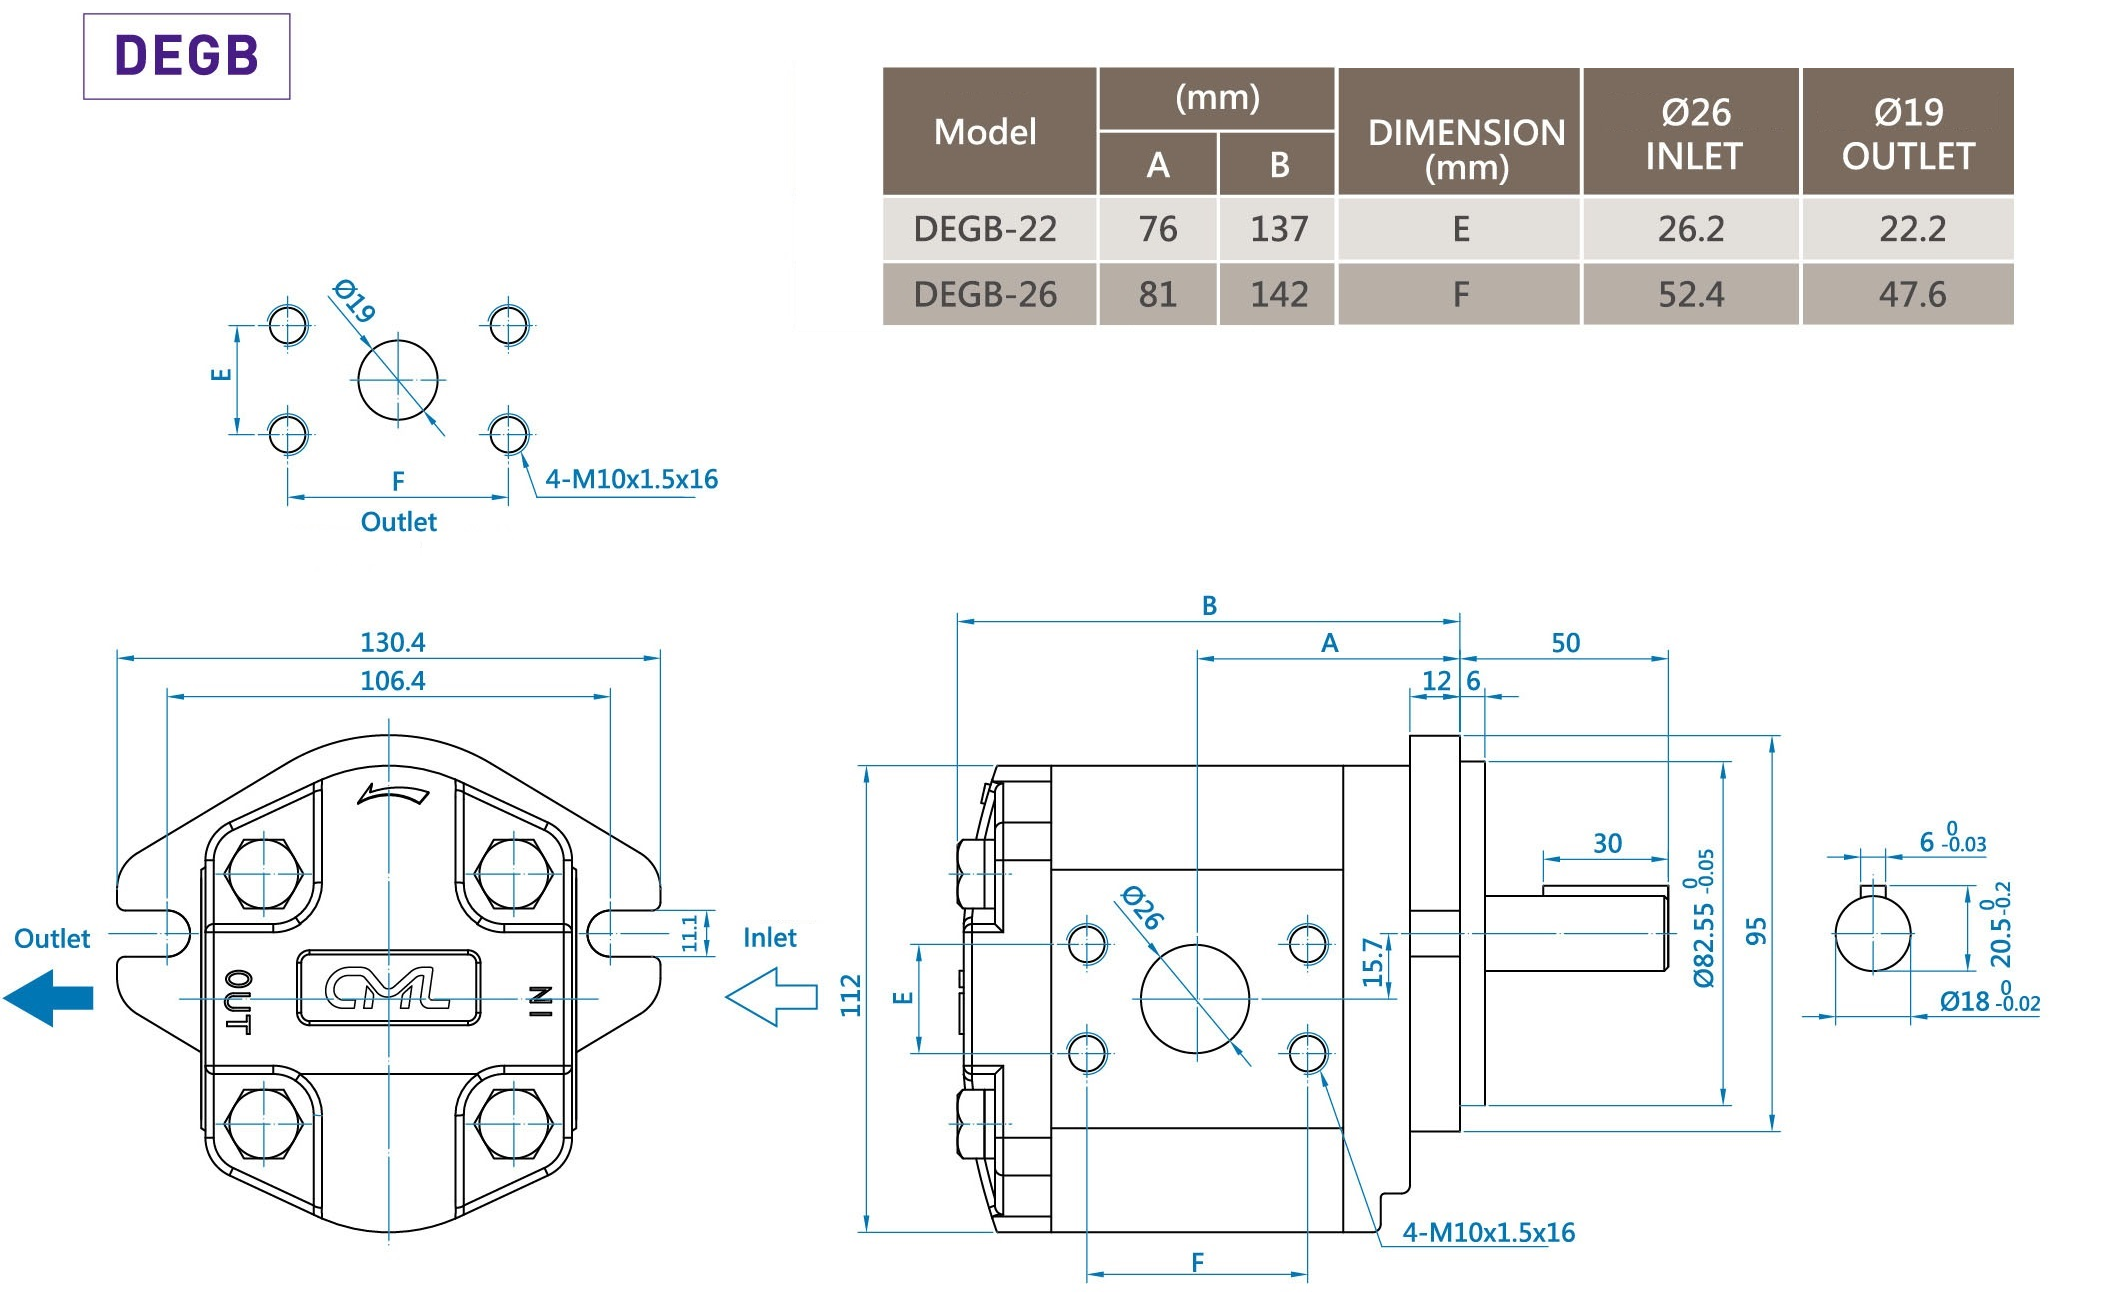 CML Duplex Gear B Series Minimum sonitus Externi Apparatus Pump DEGB Mensuratio, Dimensio, Diagram